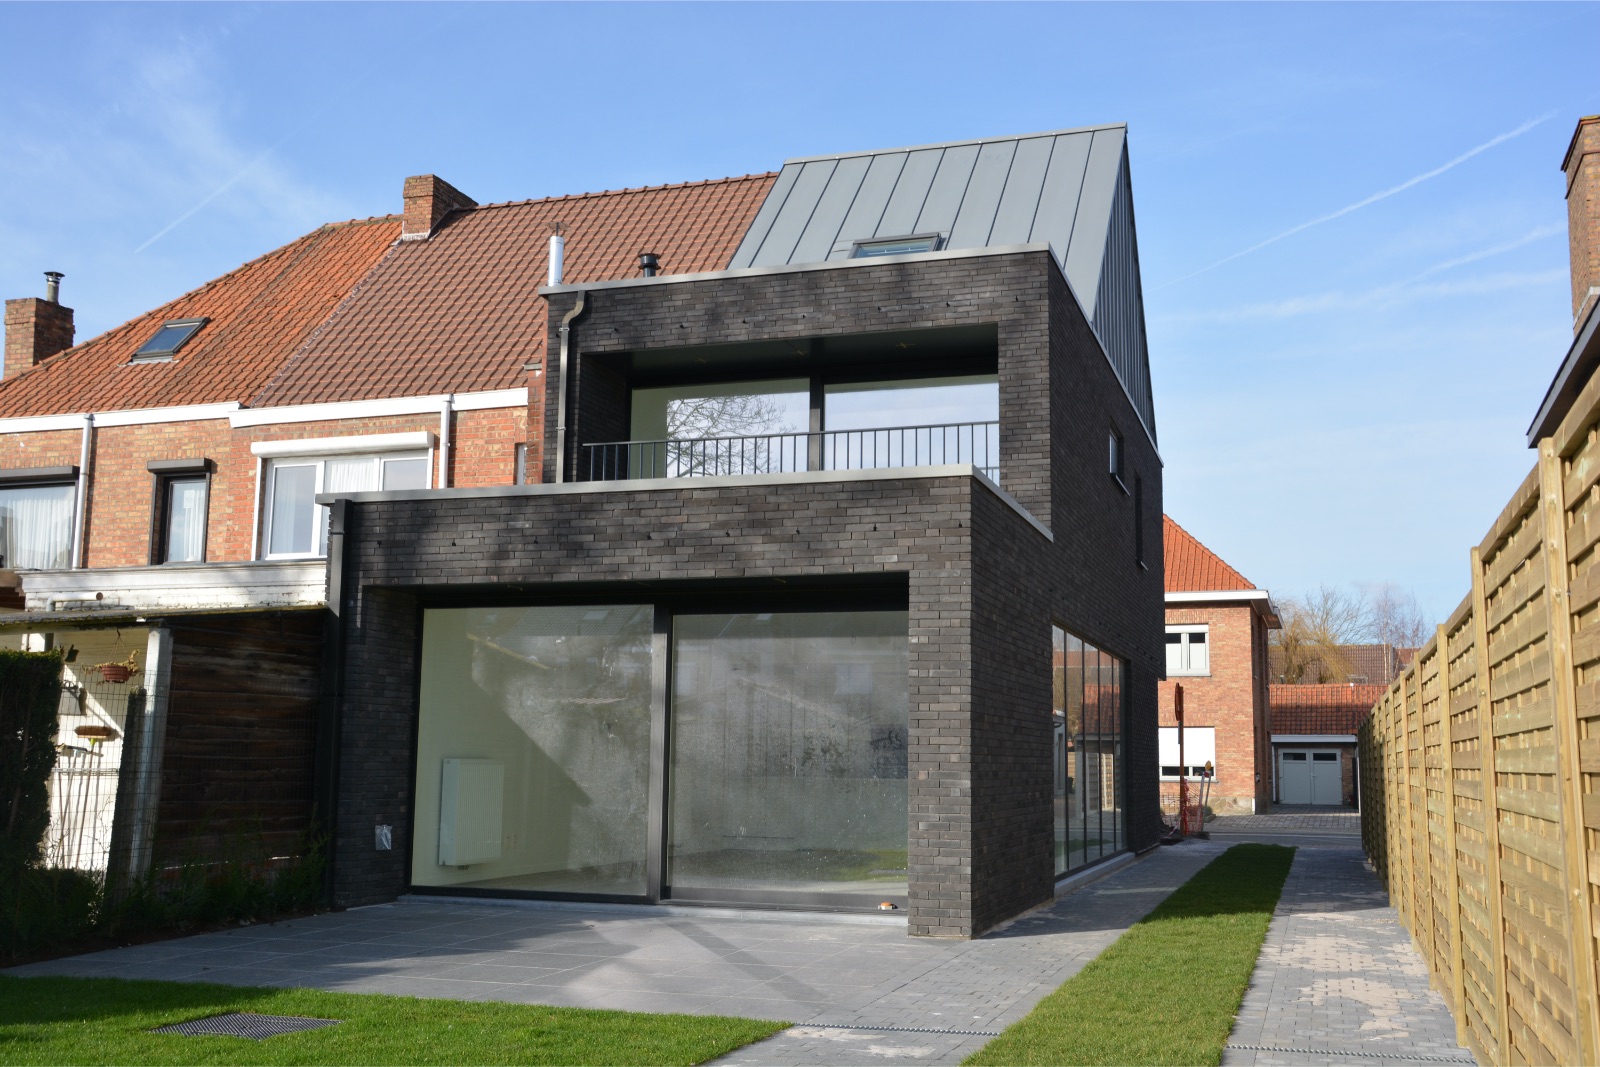 Achteraanzicht van een verbouwing en nieuwbouwwoning, realisatie van Plan Architectenbureau Brugge